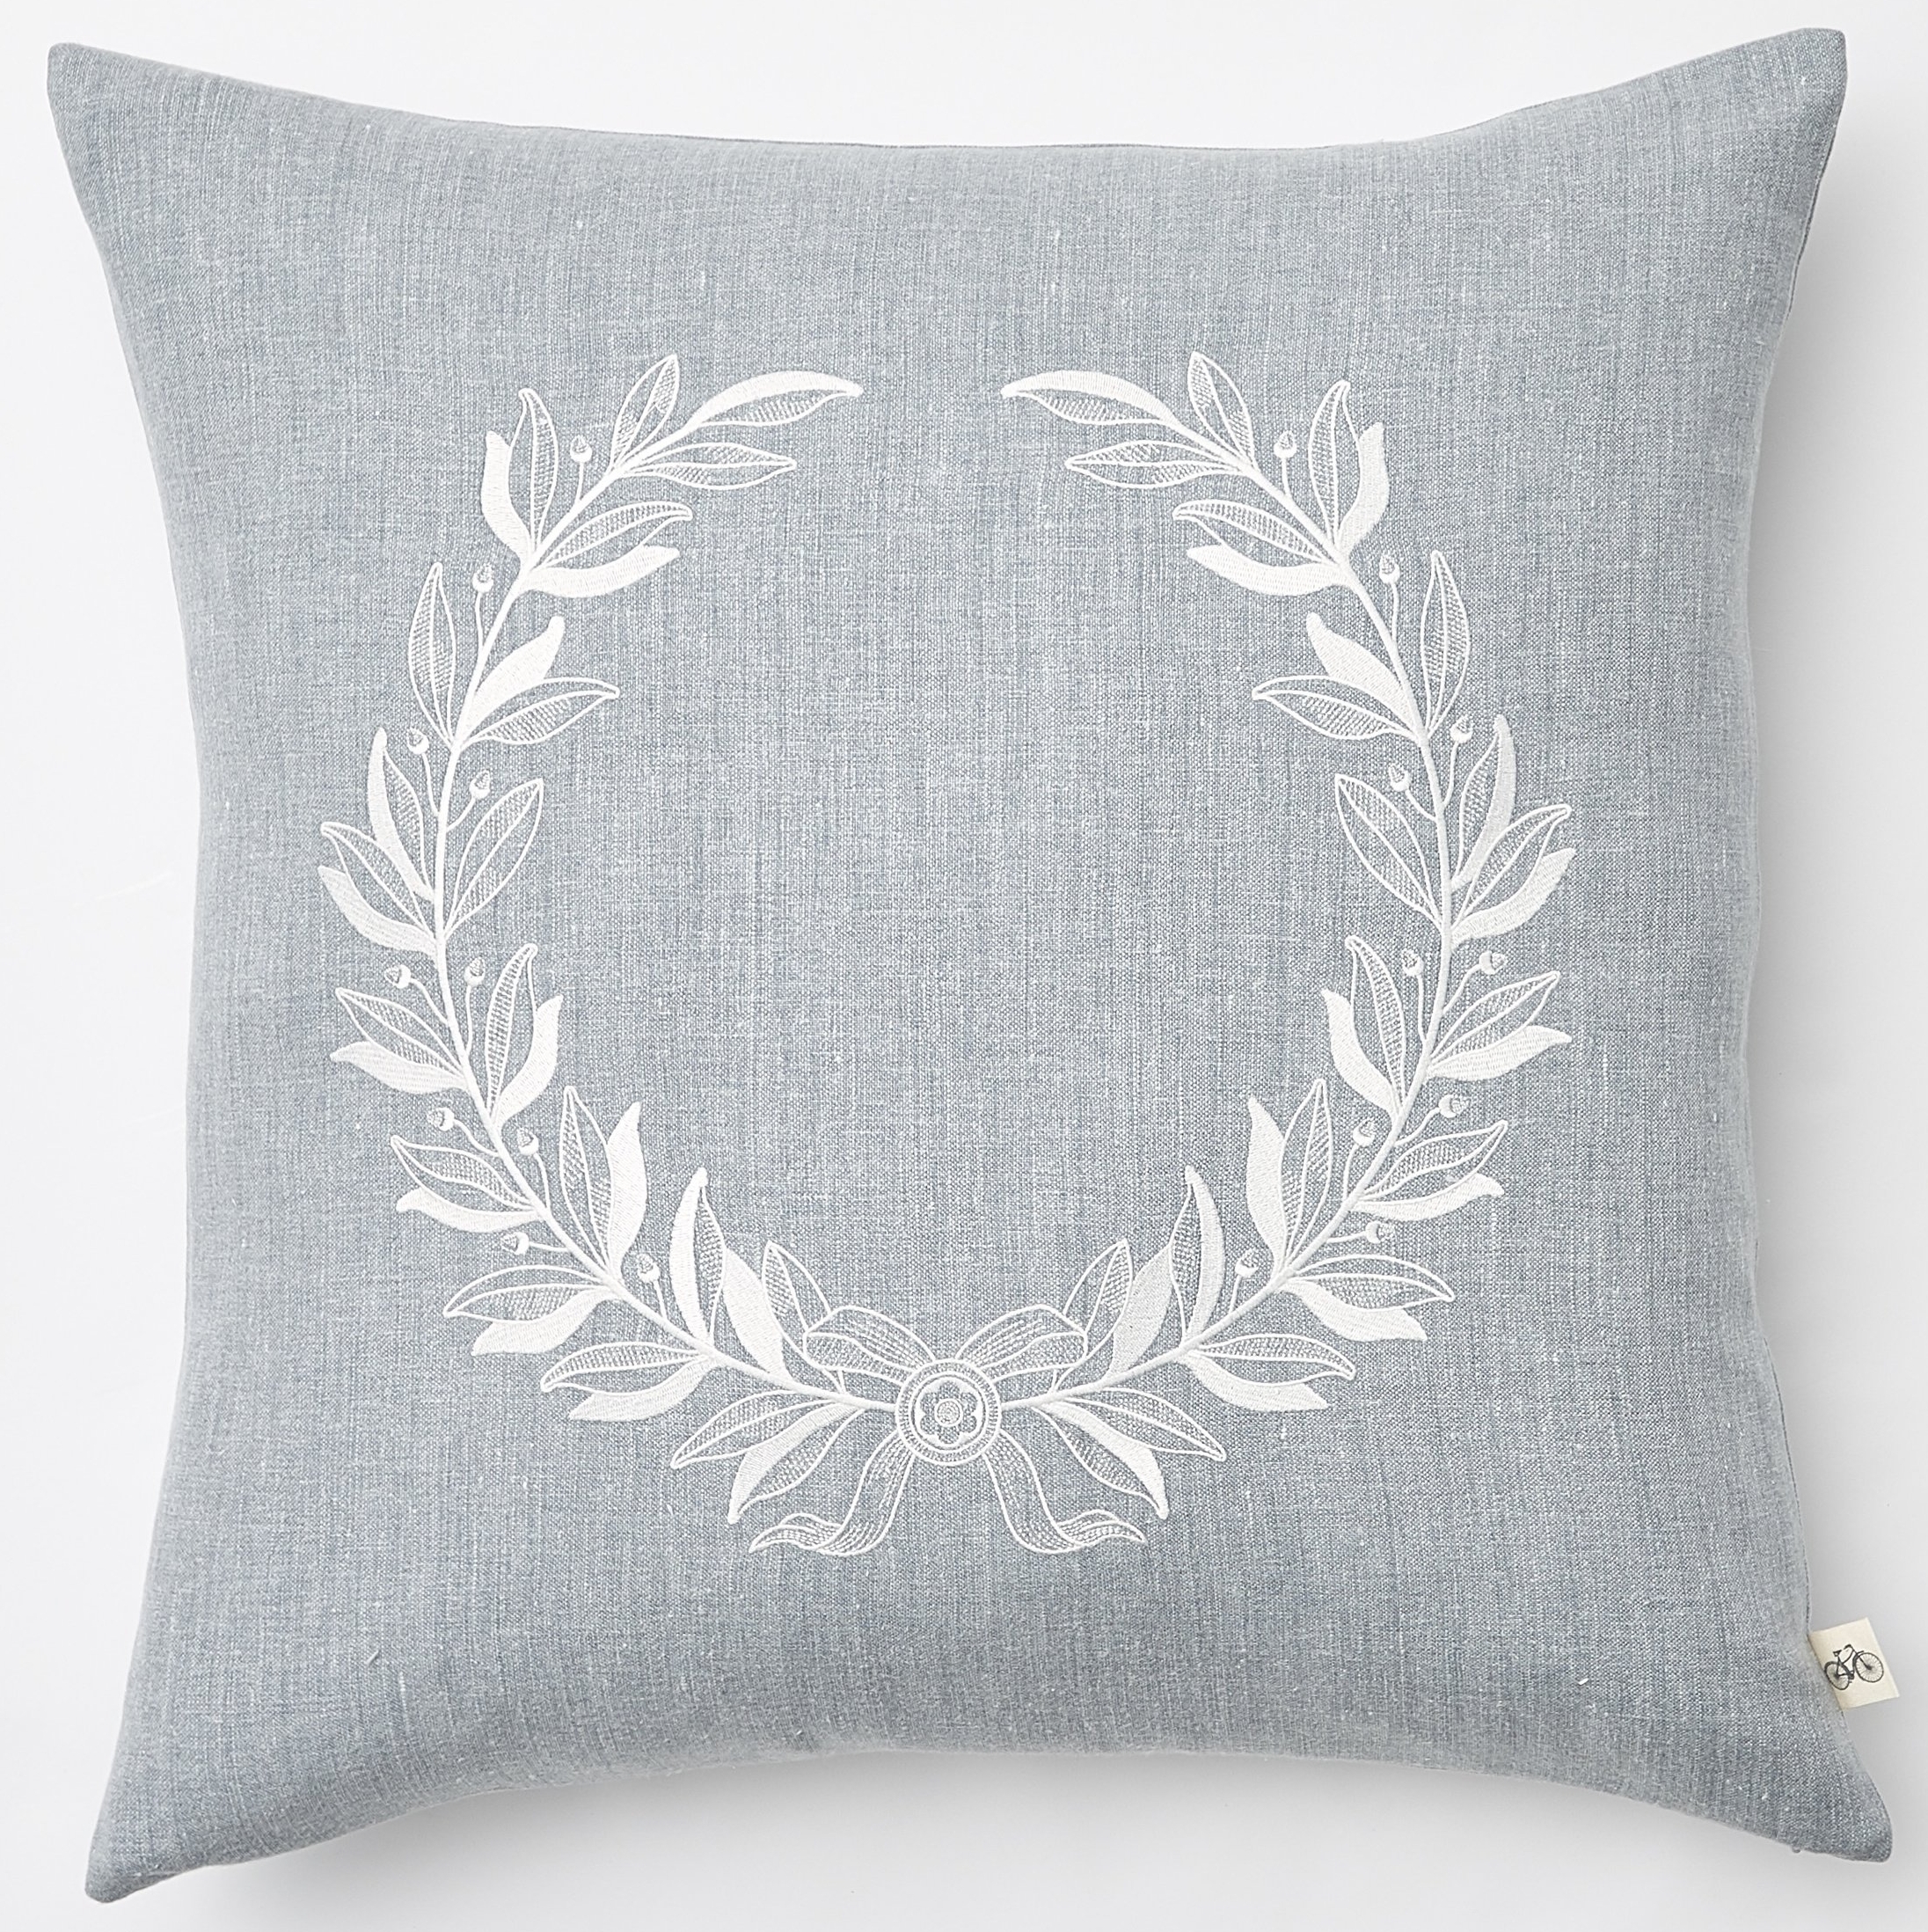 Laurel Wreath Pillow